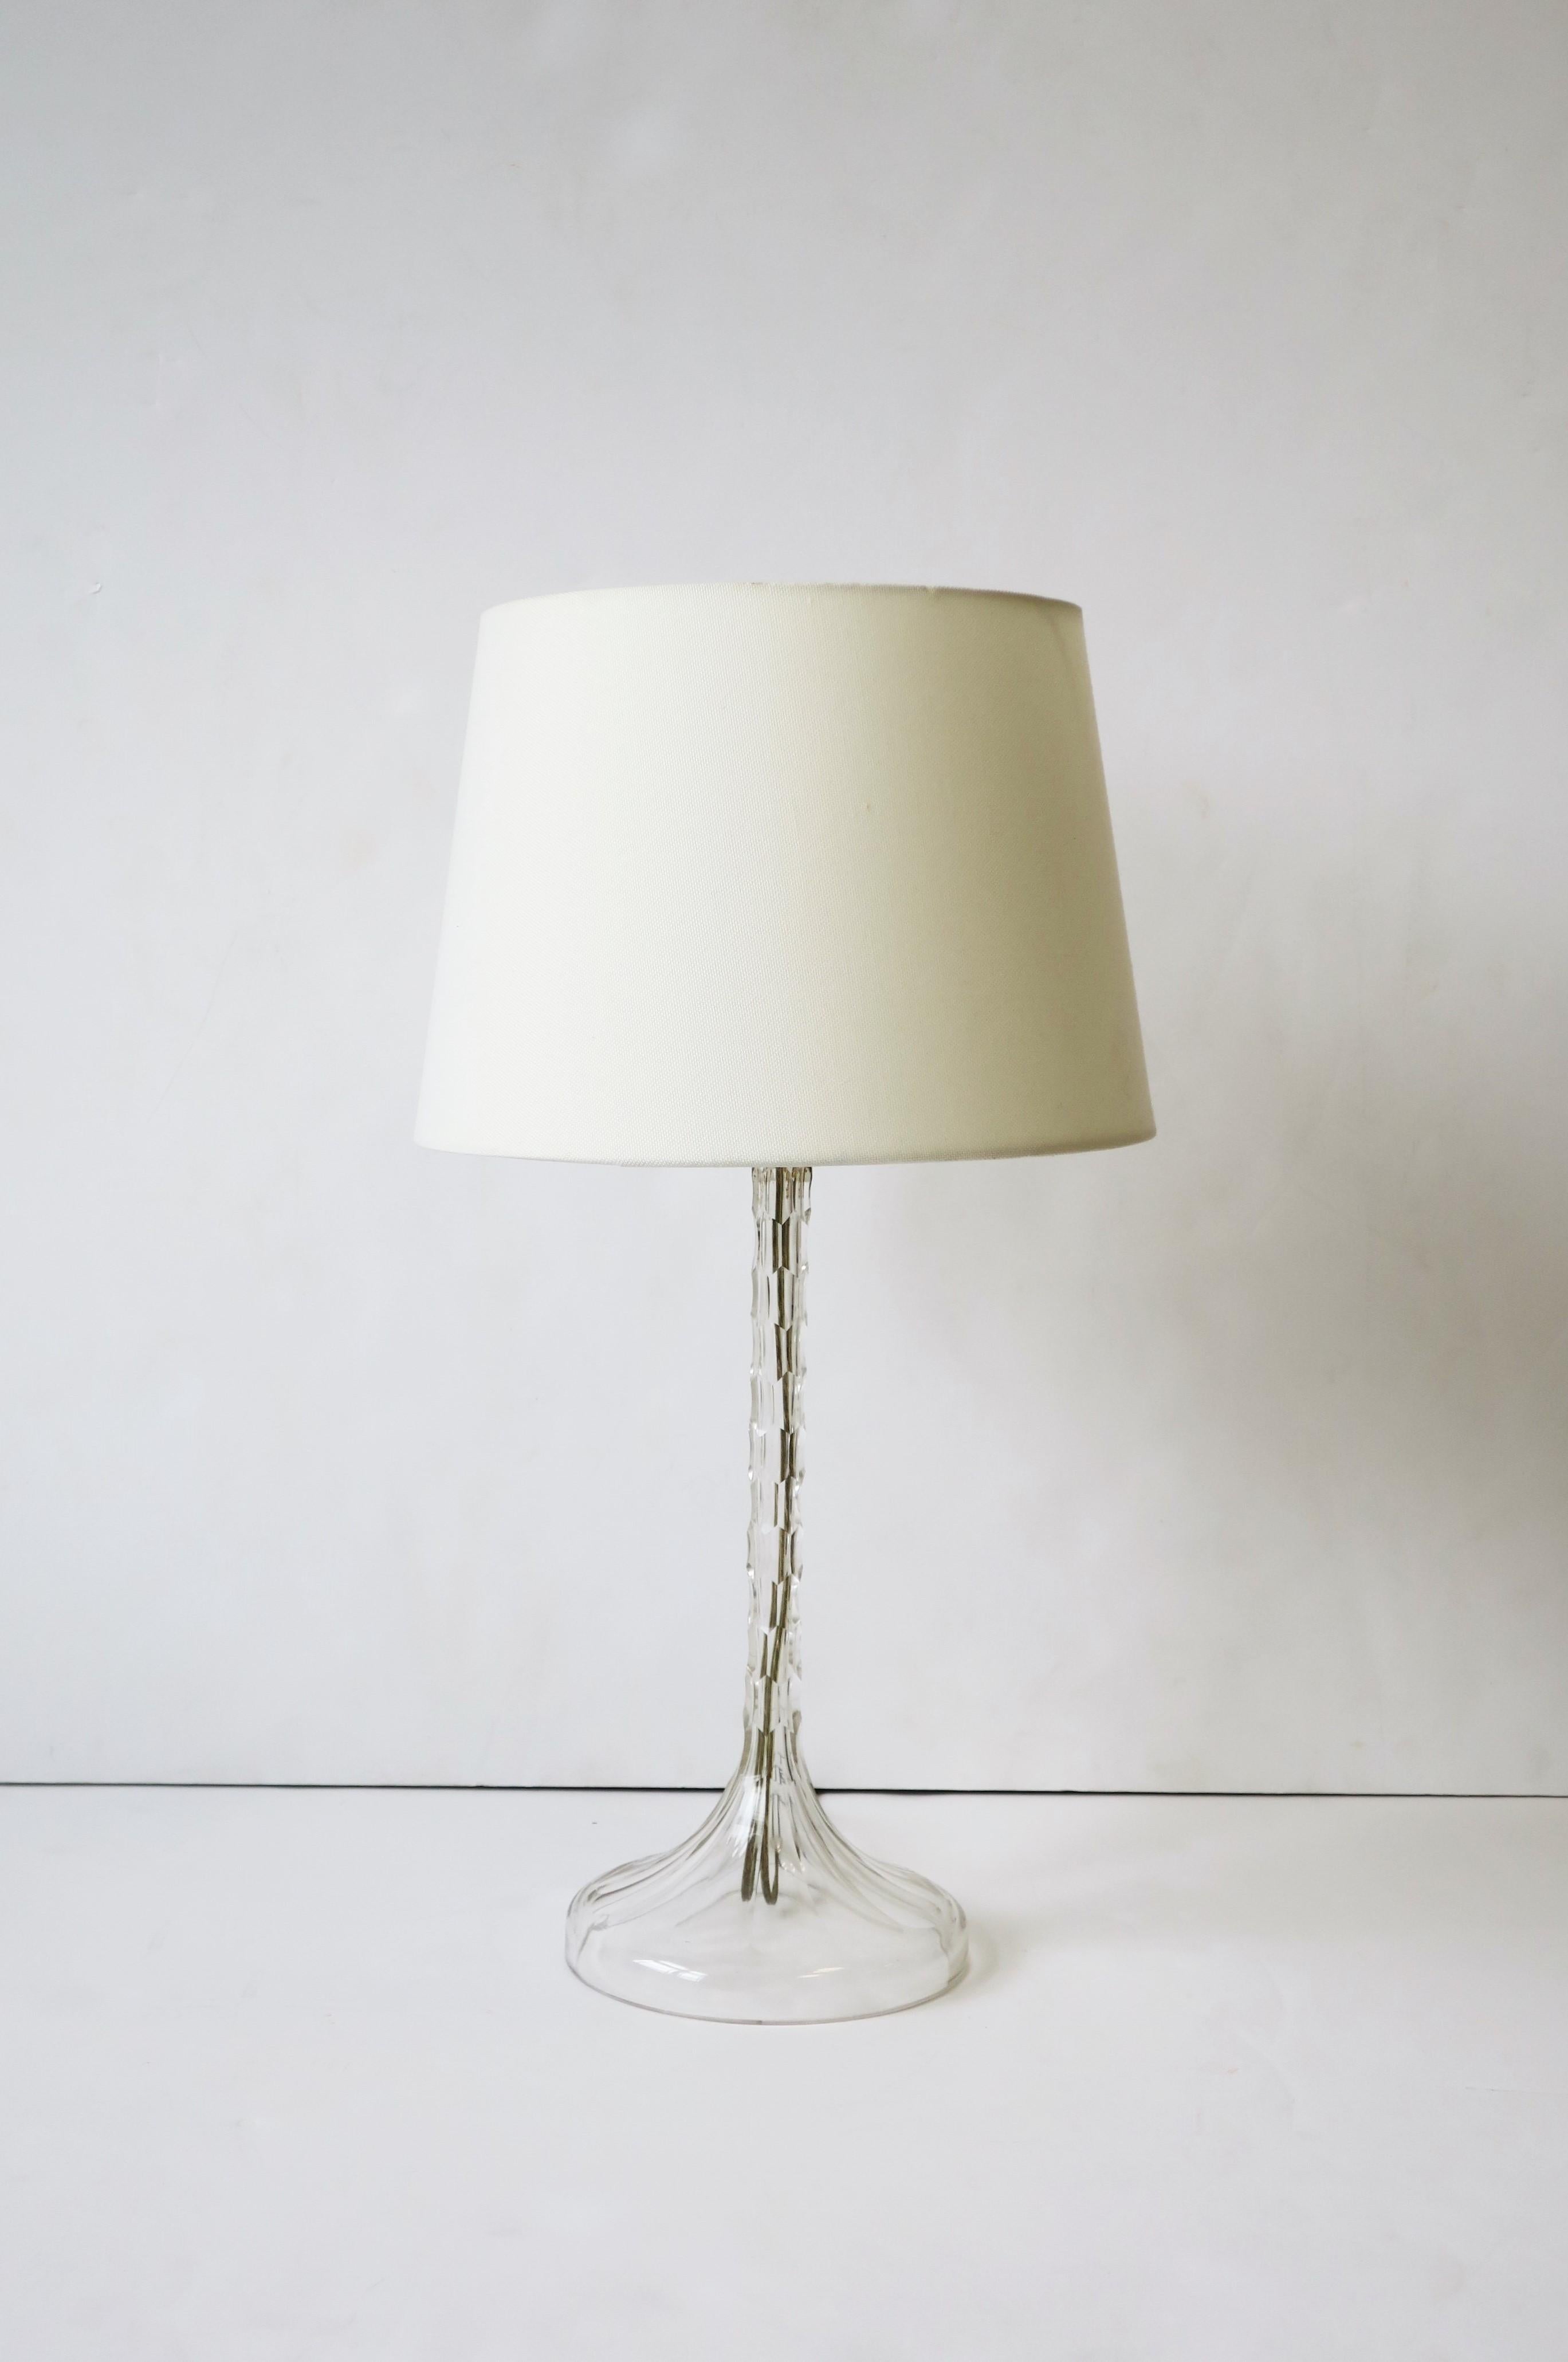 Une élégante lampe de bureau ou de table en cristal clair taillé européen, vers le 20e siècle. Une belle lampe avec des découpes modernes de haut en bas sur l'ensemble de la lampe. La lampe est fabriquée à partir d'une seule pièce de cristal. La